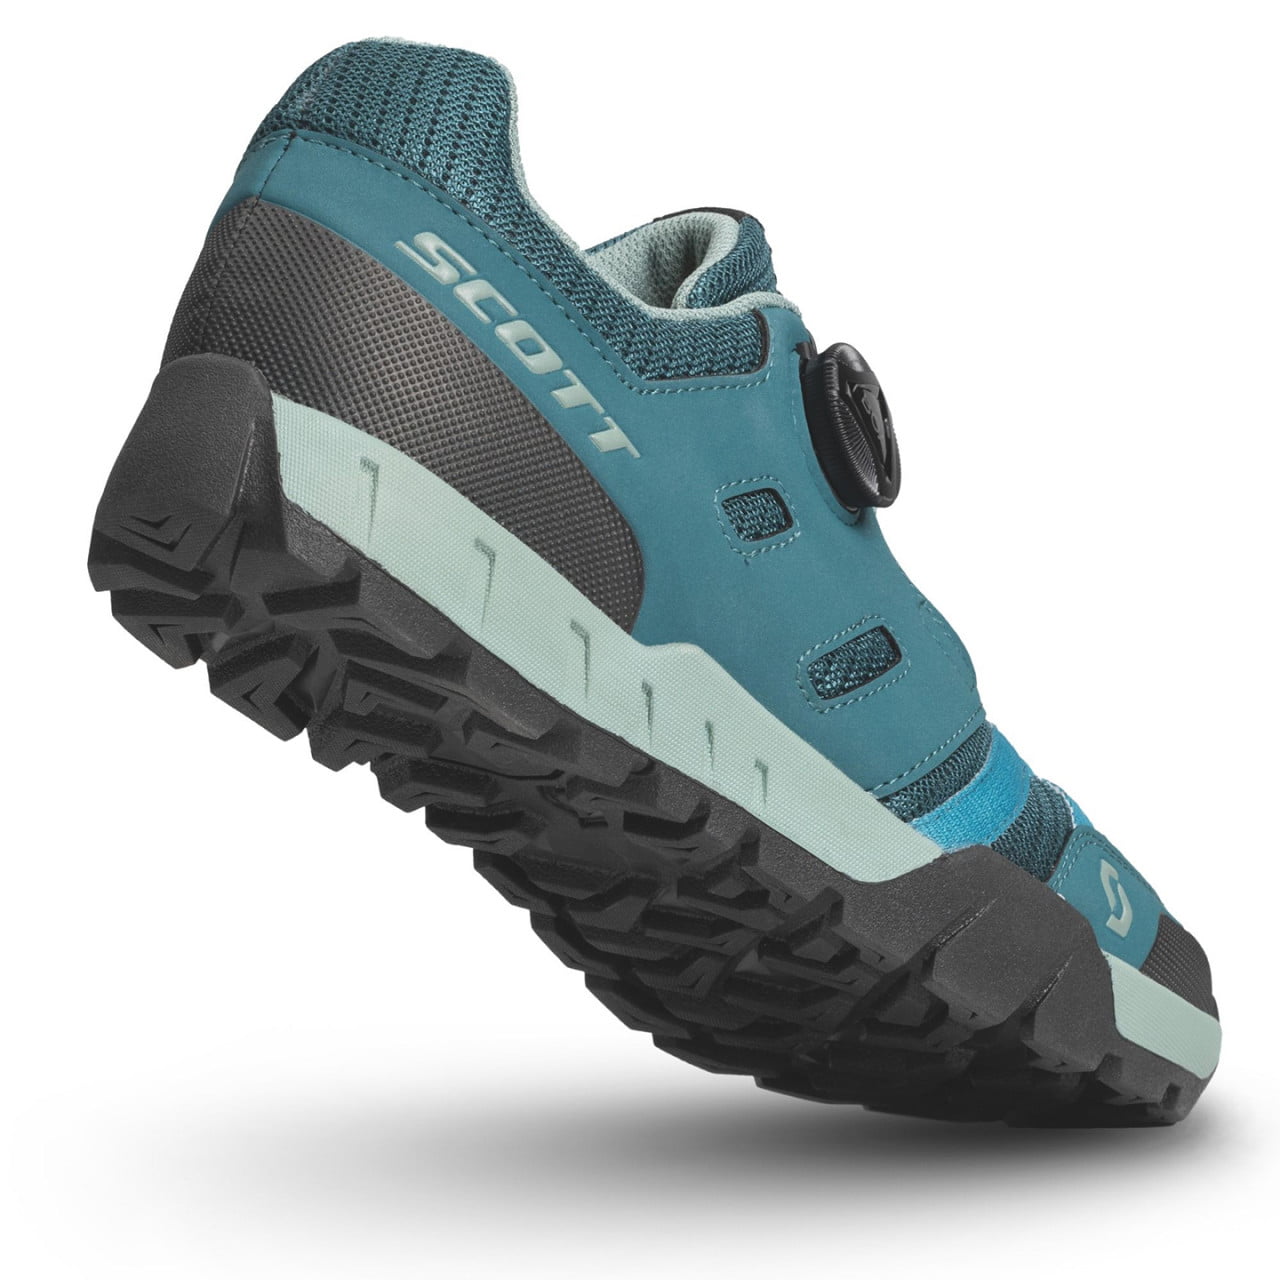 Damen Flat Pedal-Schuhe Sport Crus-r Flat Boa 2024